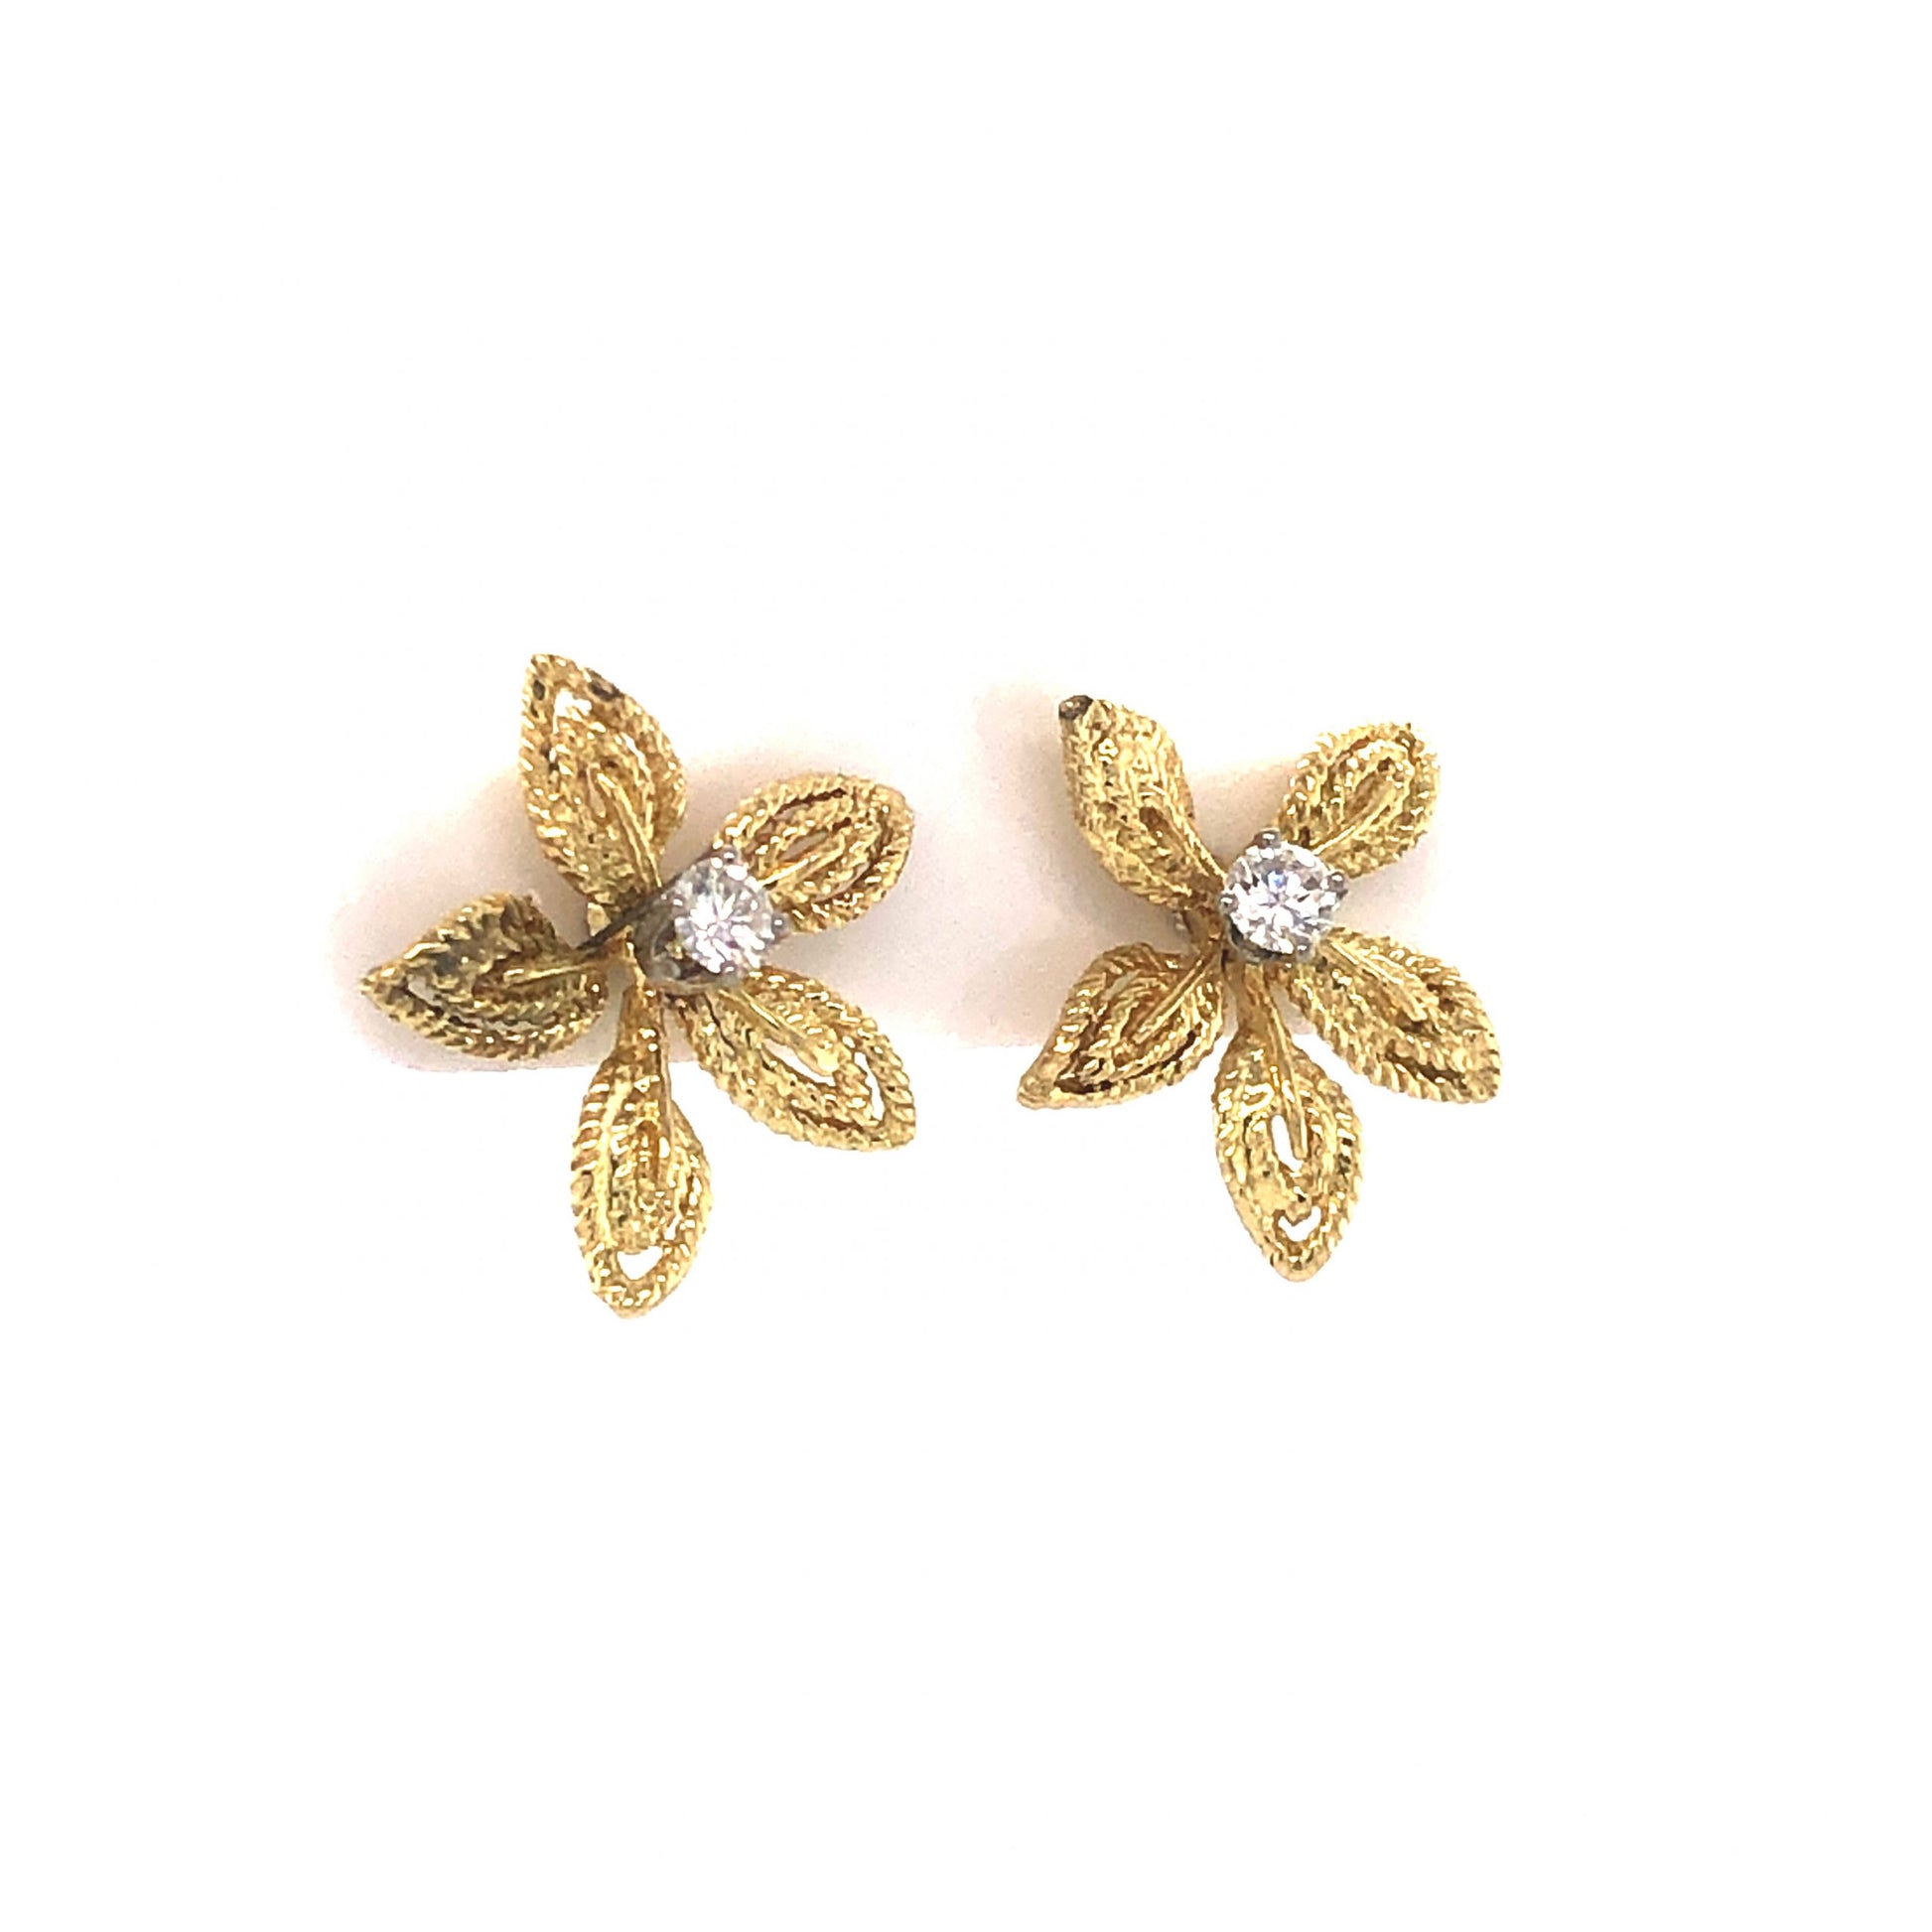 Diamond Flower Stud Earrings in 14K Yellow Gold